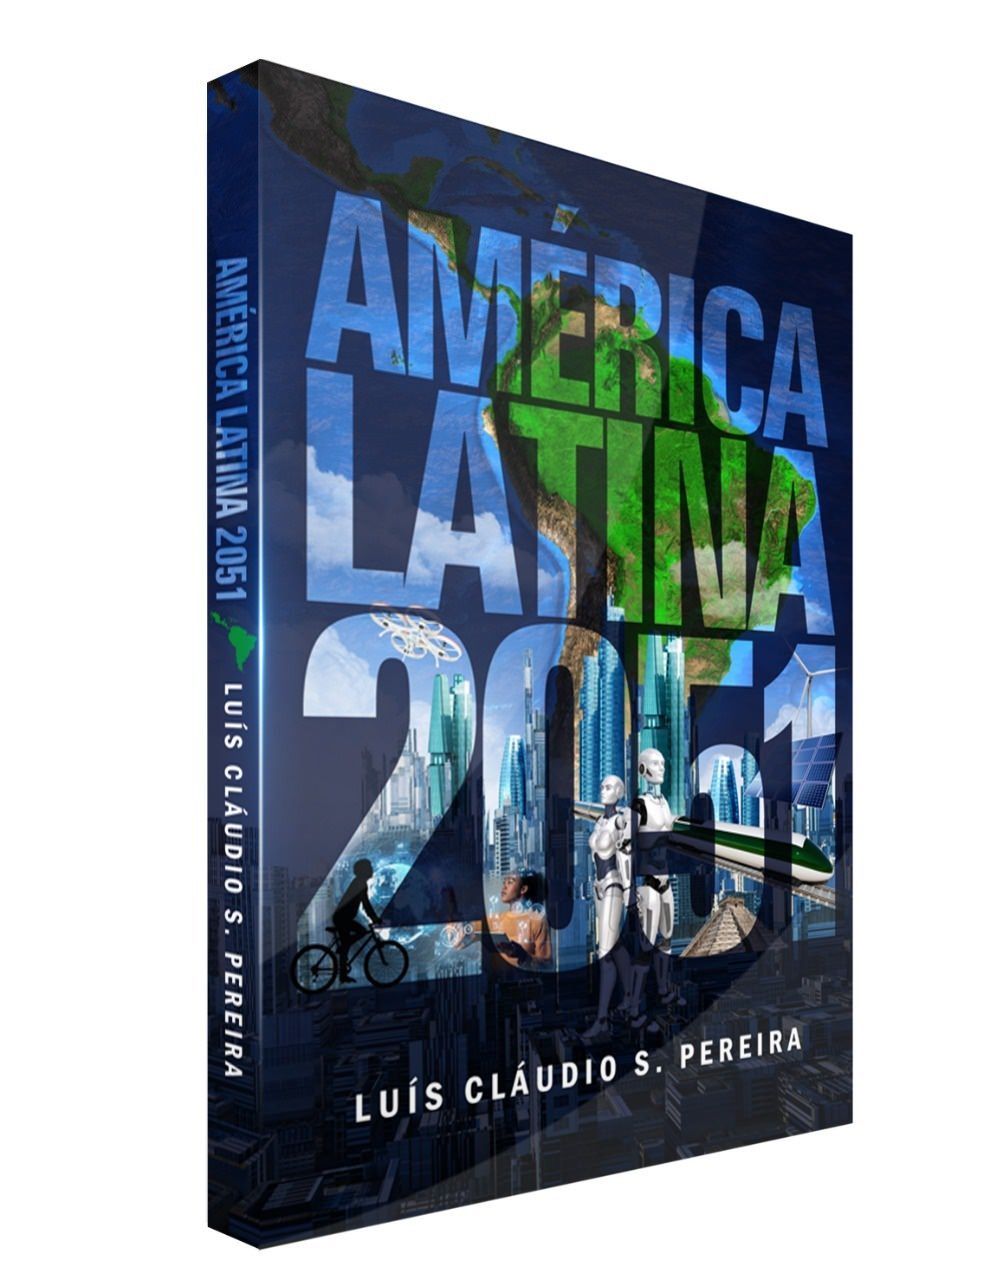 Livro "América Latina 2051" de Luís Cláudio S. Pereira, capa. Divulgação.